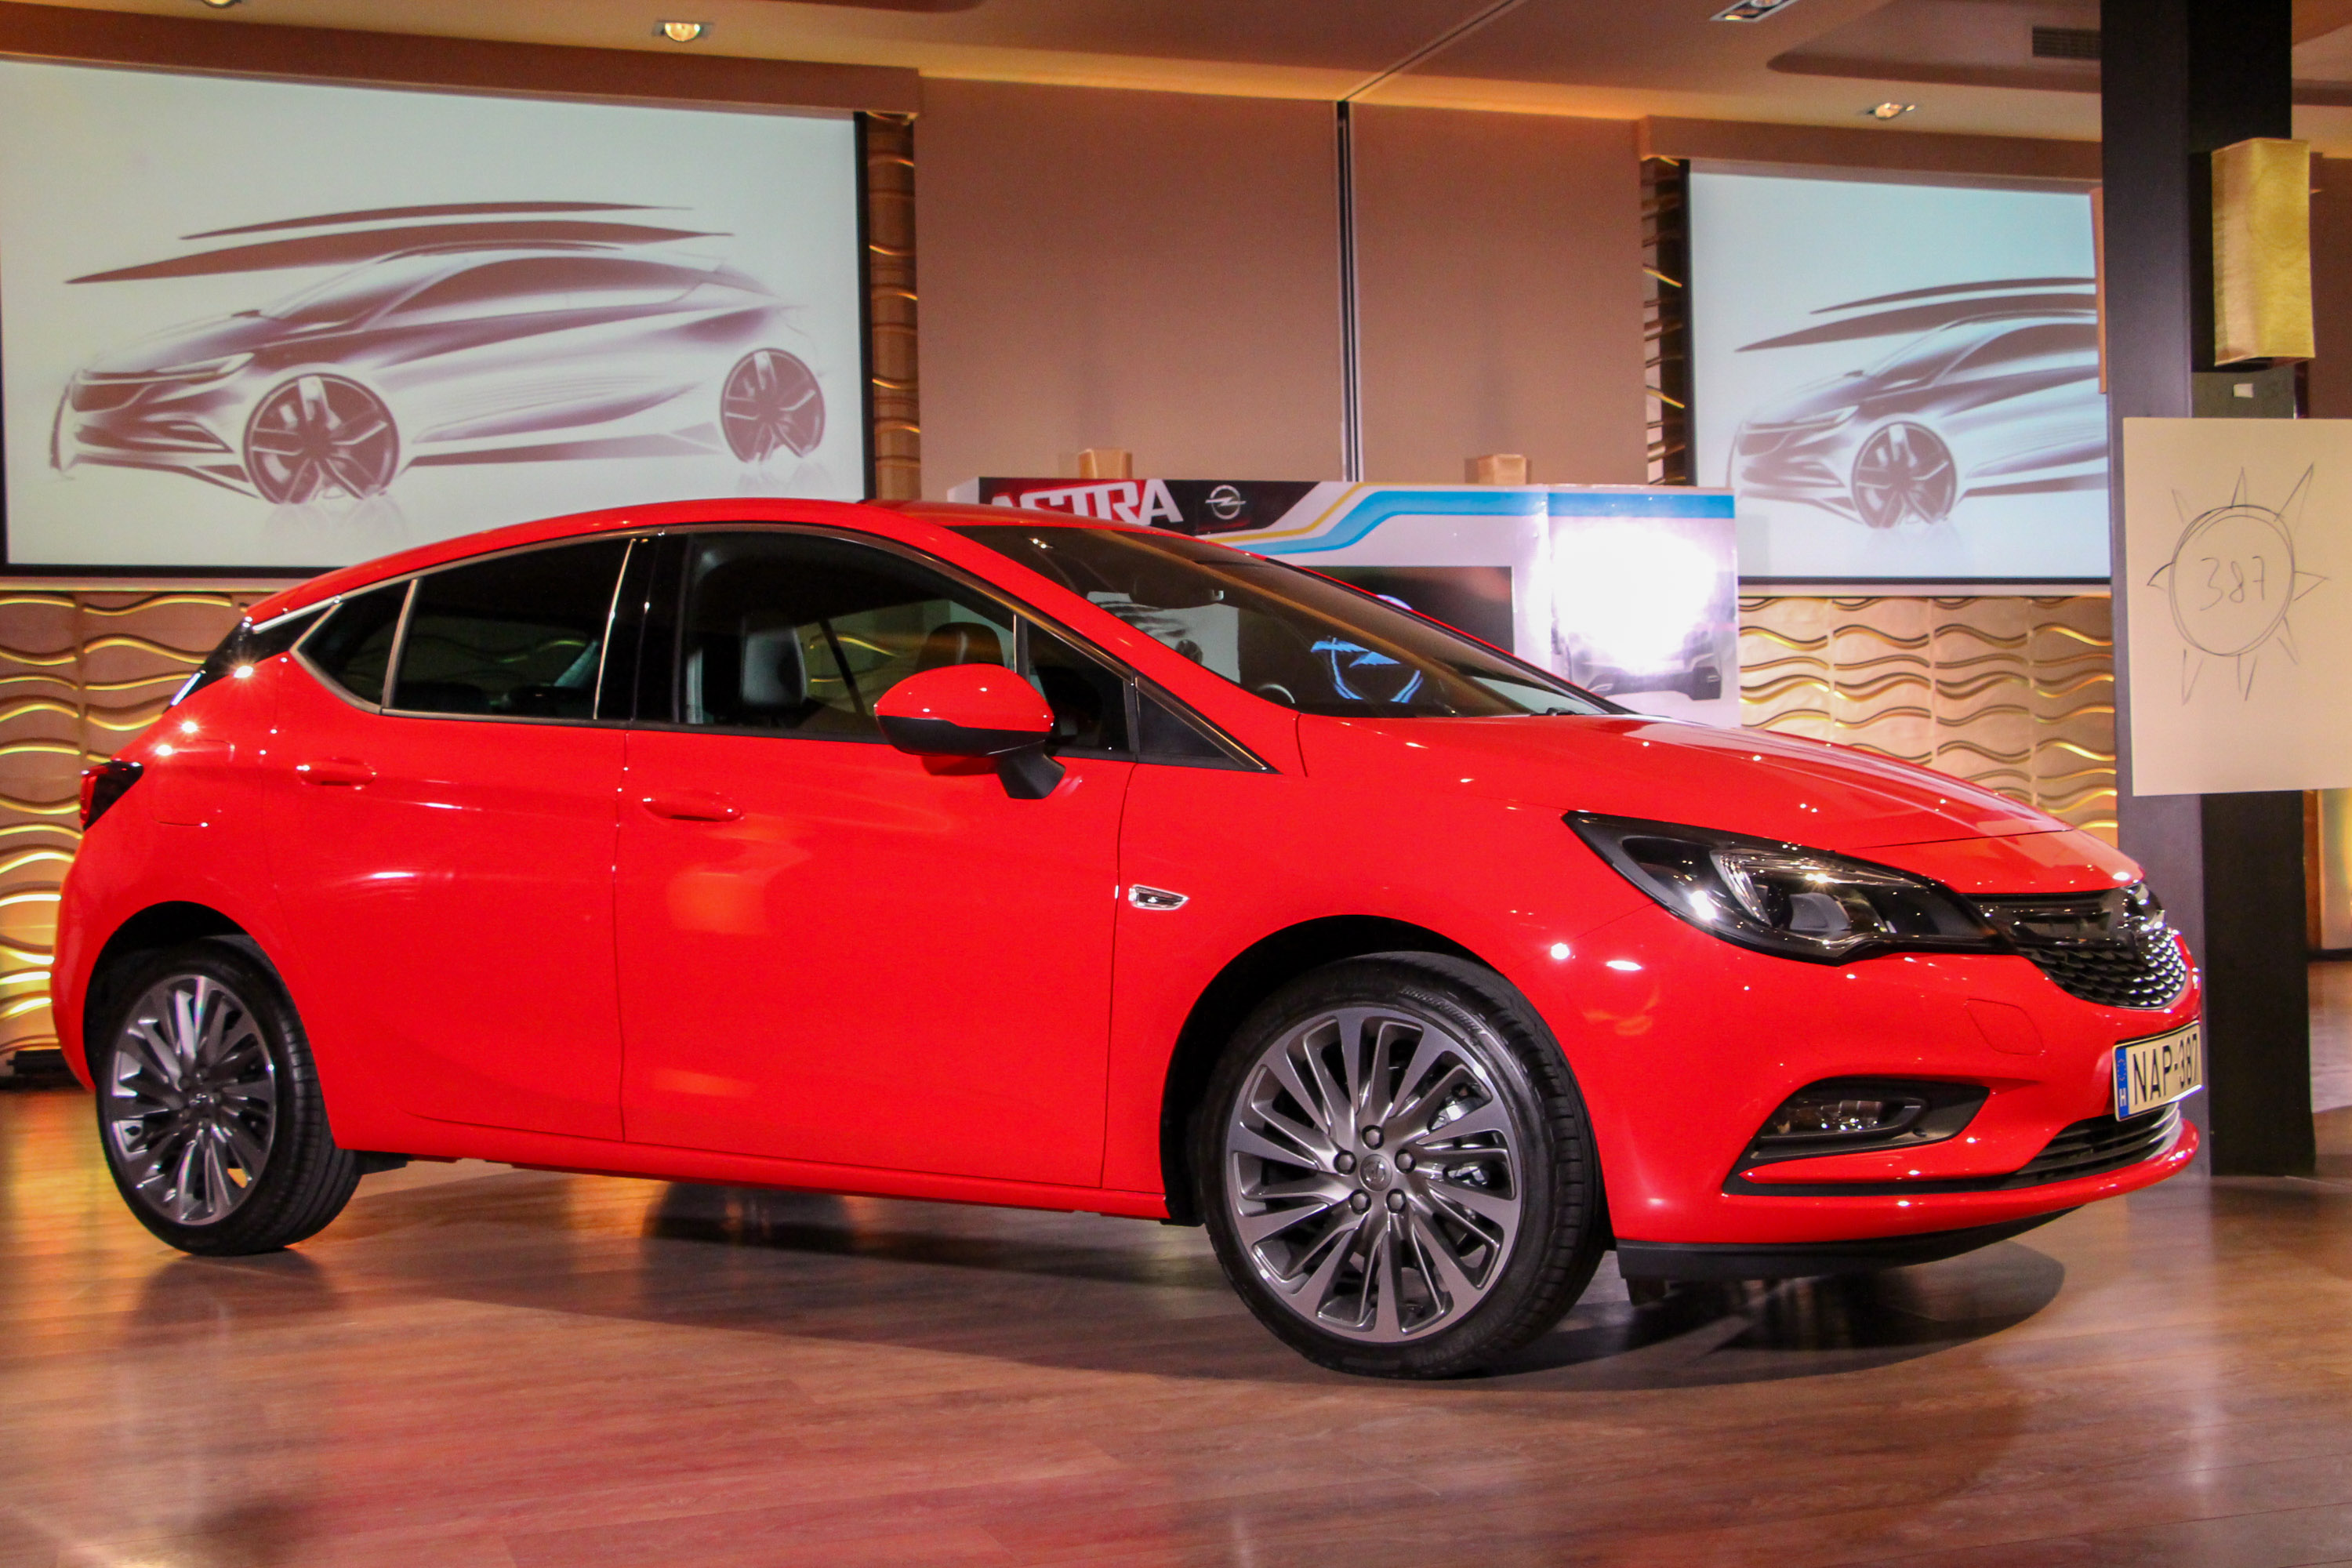 Ilyen jó még sosem volt! Opel Astra Sports Tourer 1.6 CDTI teszt -  Autónavigátor.hu